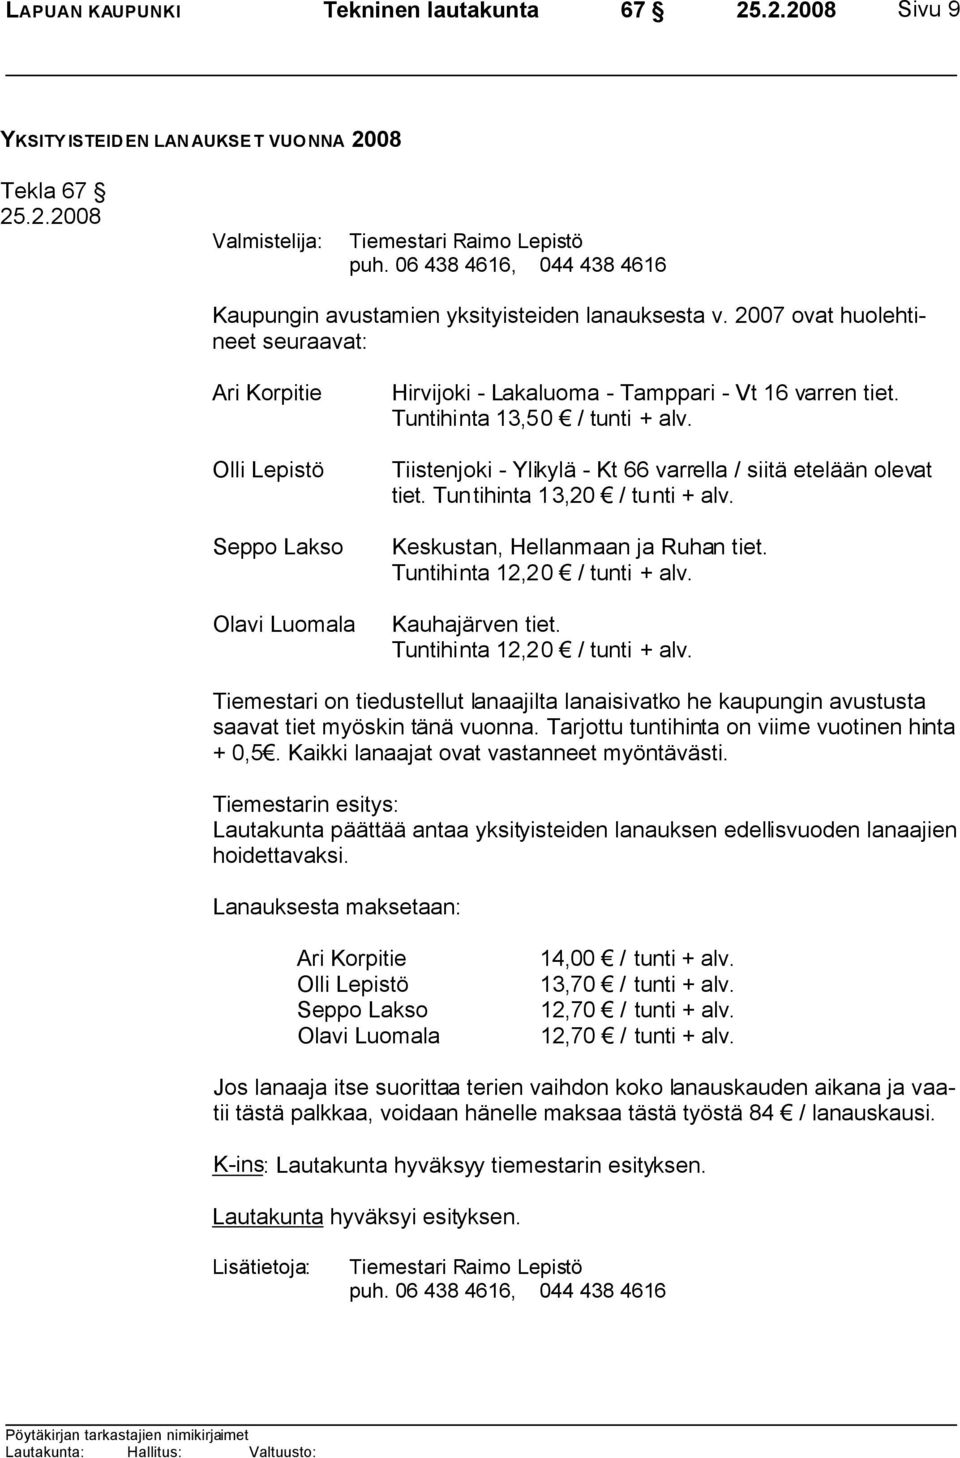 2007 ovat huolehtineet seuraavat: Ari Korpitie Olli Lepistö Seppo Lakso Olavi Luomala Hirvijoki - Lakaluoma - Tamppari - Vt 16 varren tiet. Tuntihinta 13,50 / tunti + alv.